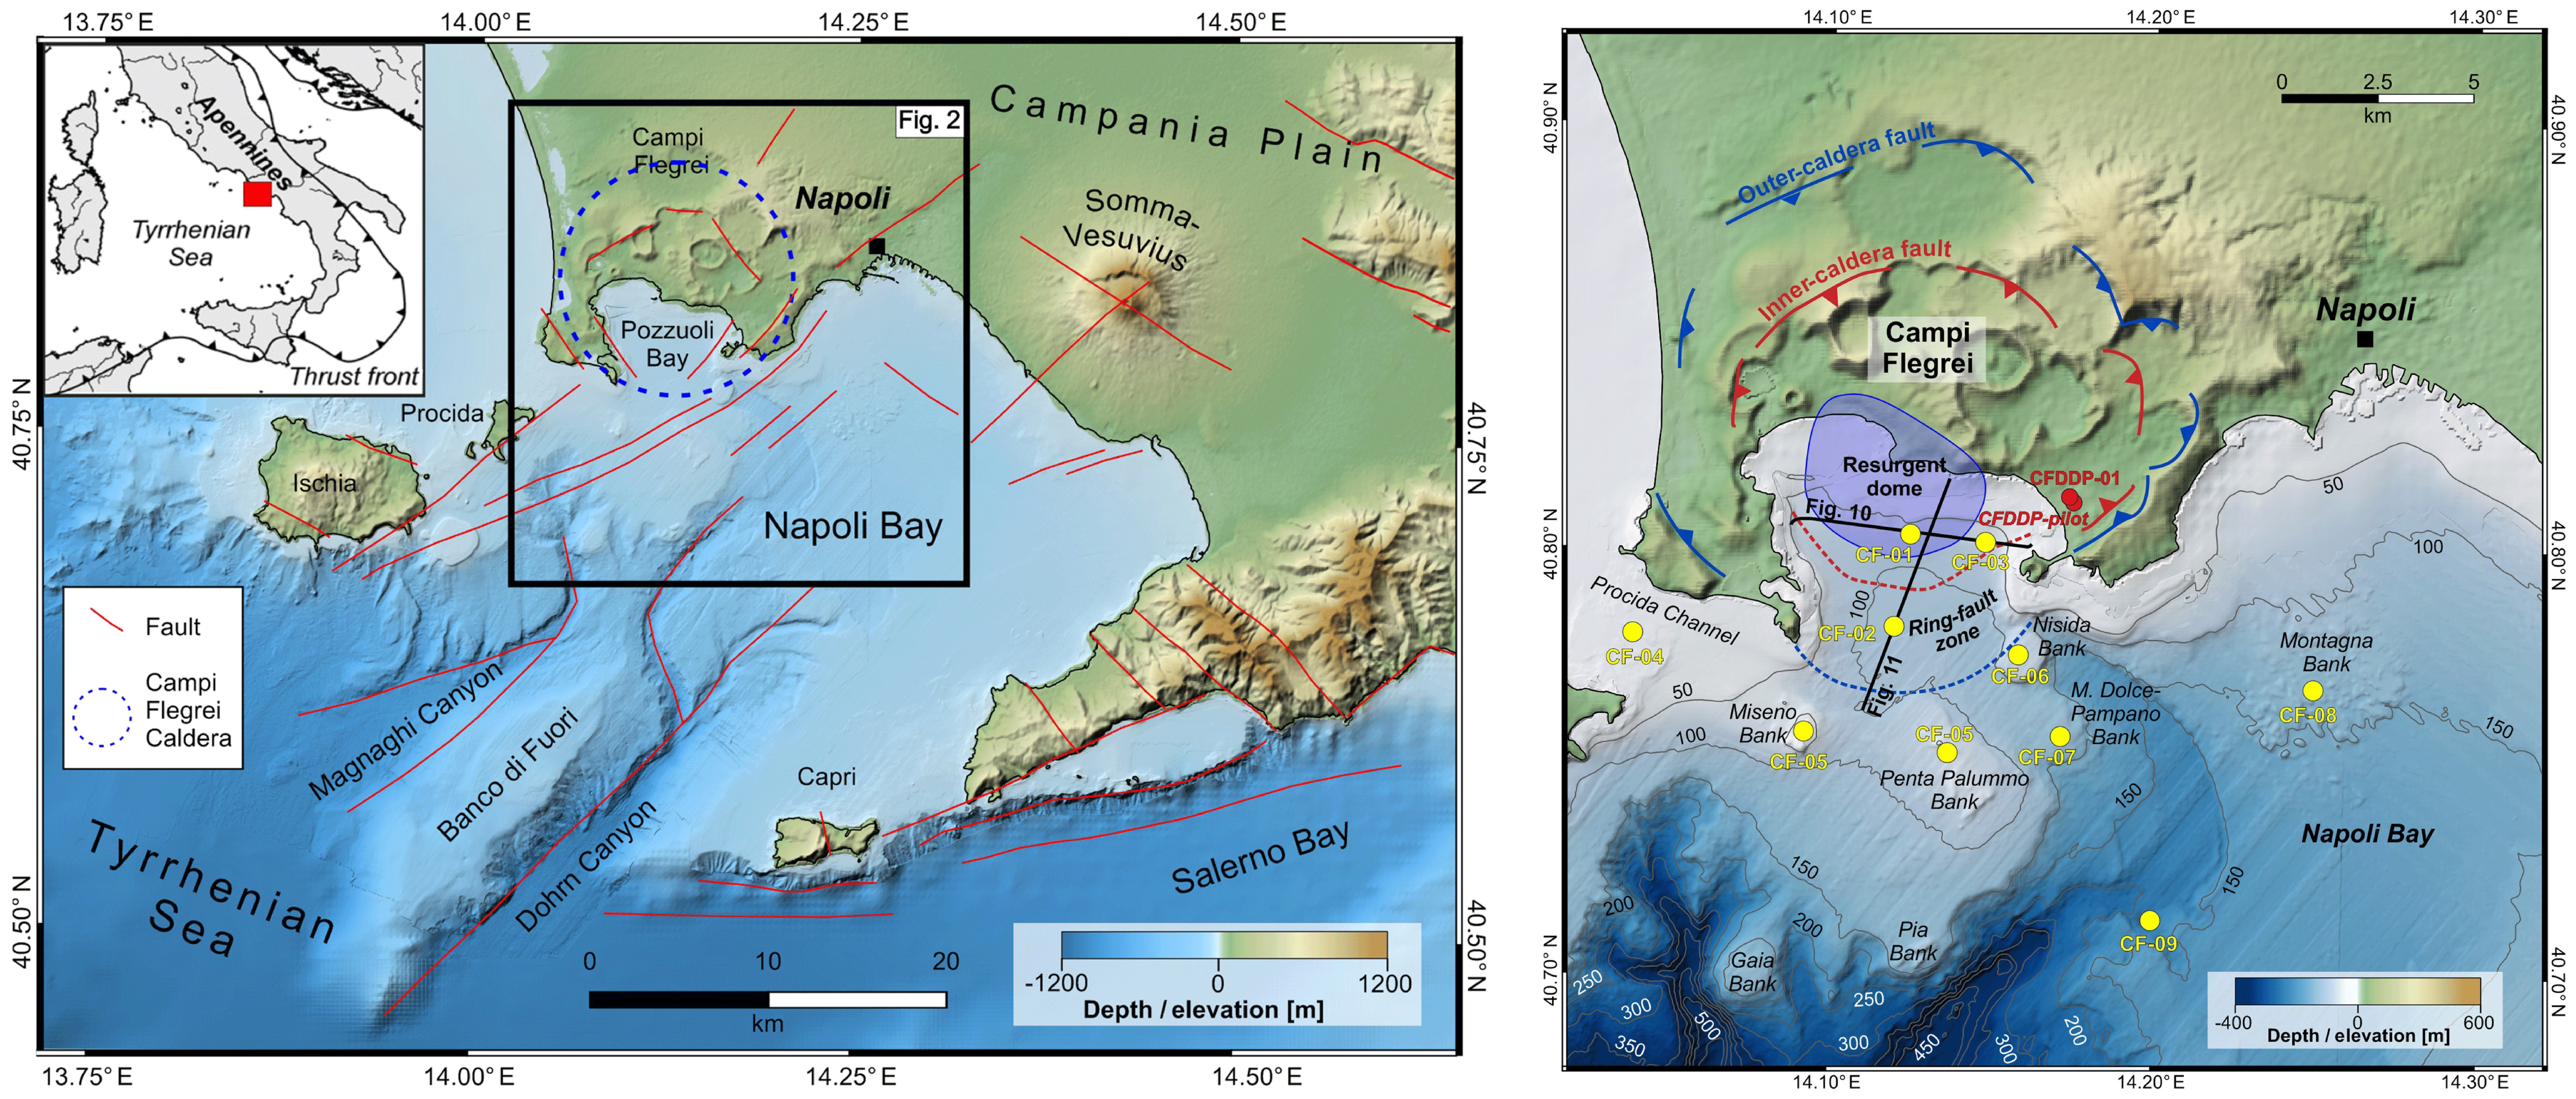 Maps of Campanian Volcanic Zone and Campi Flegrei caldera